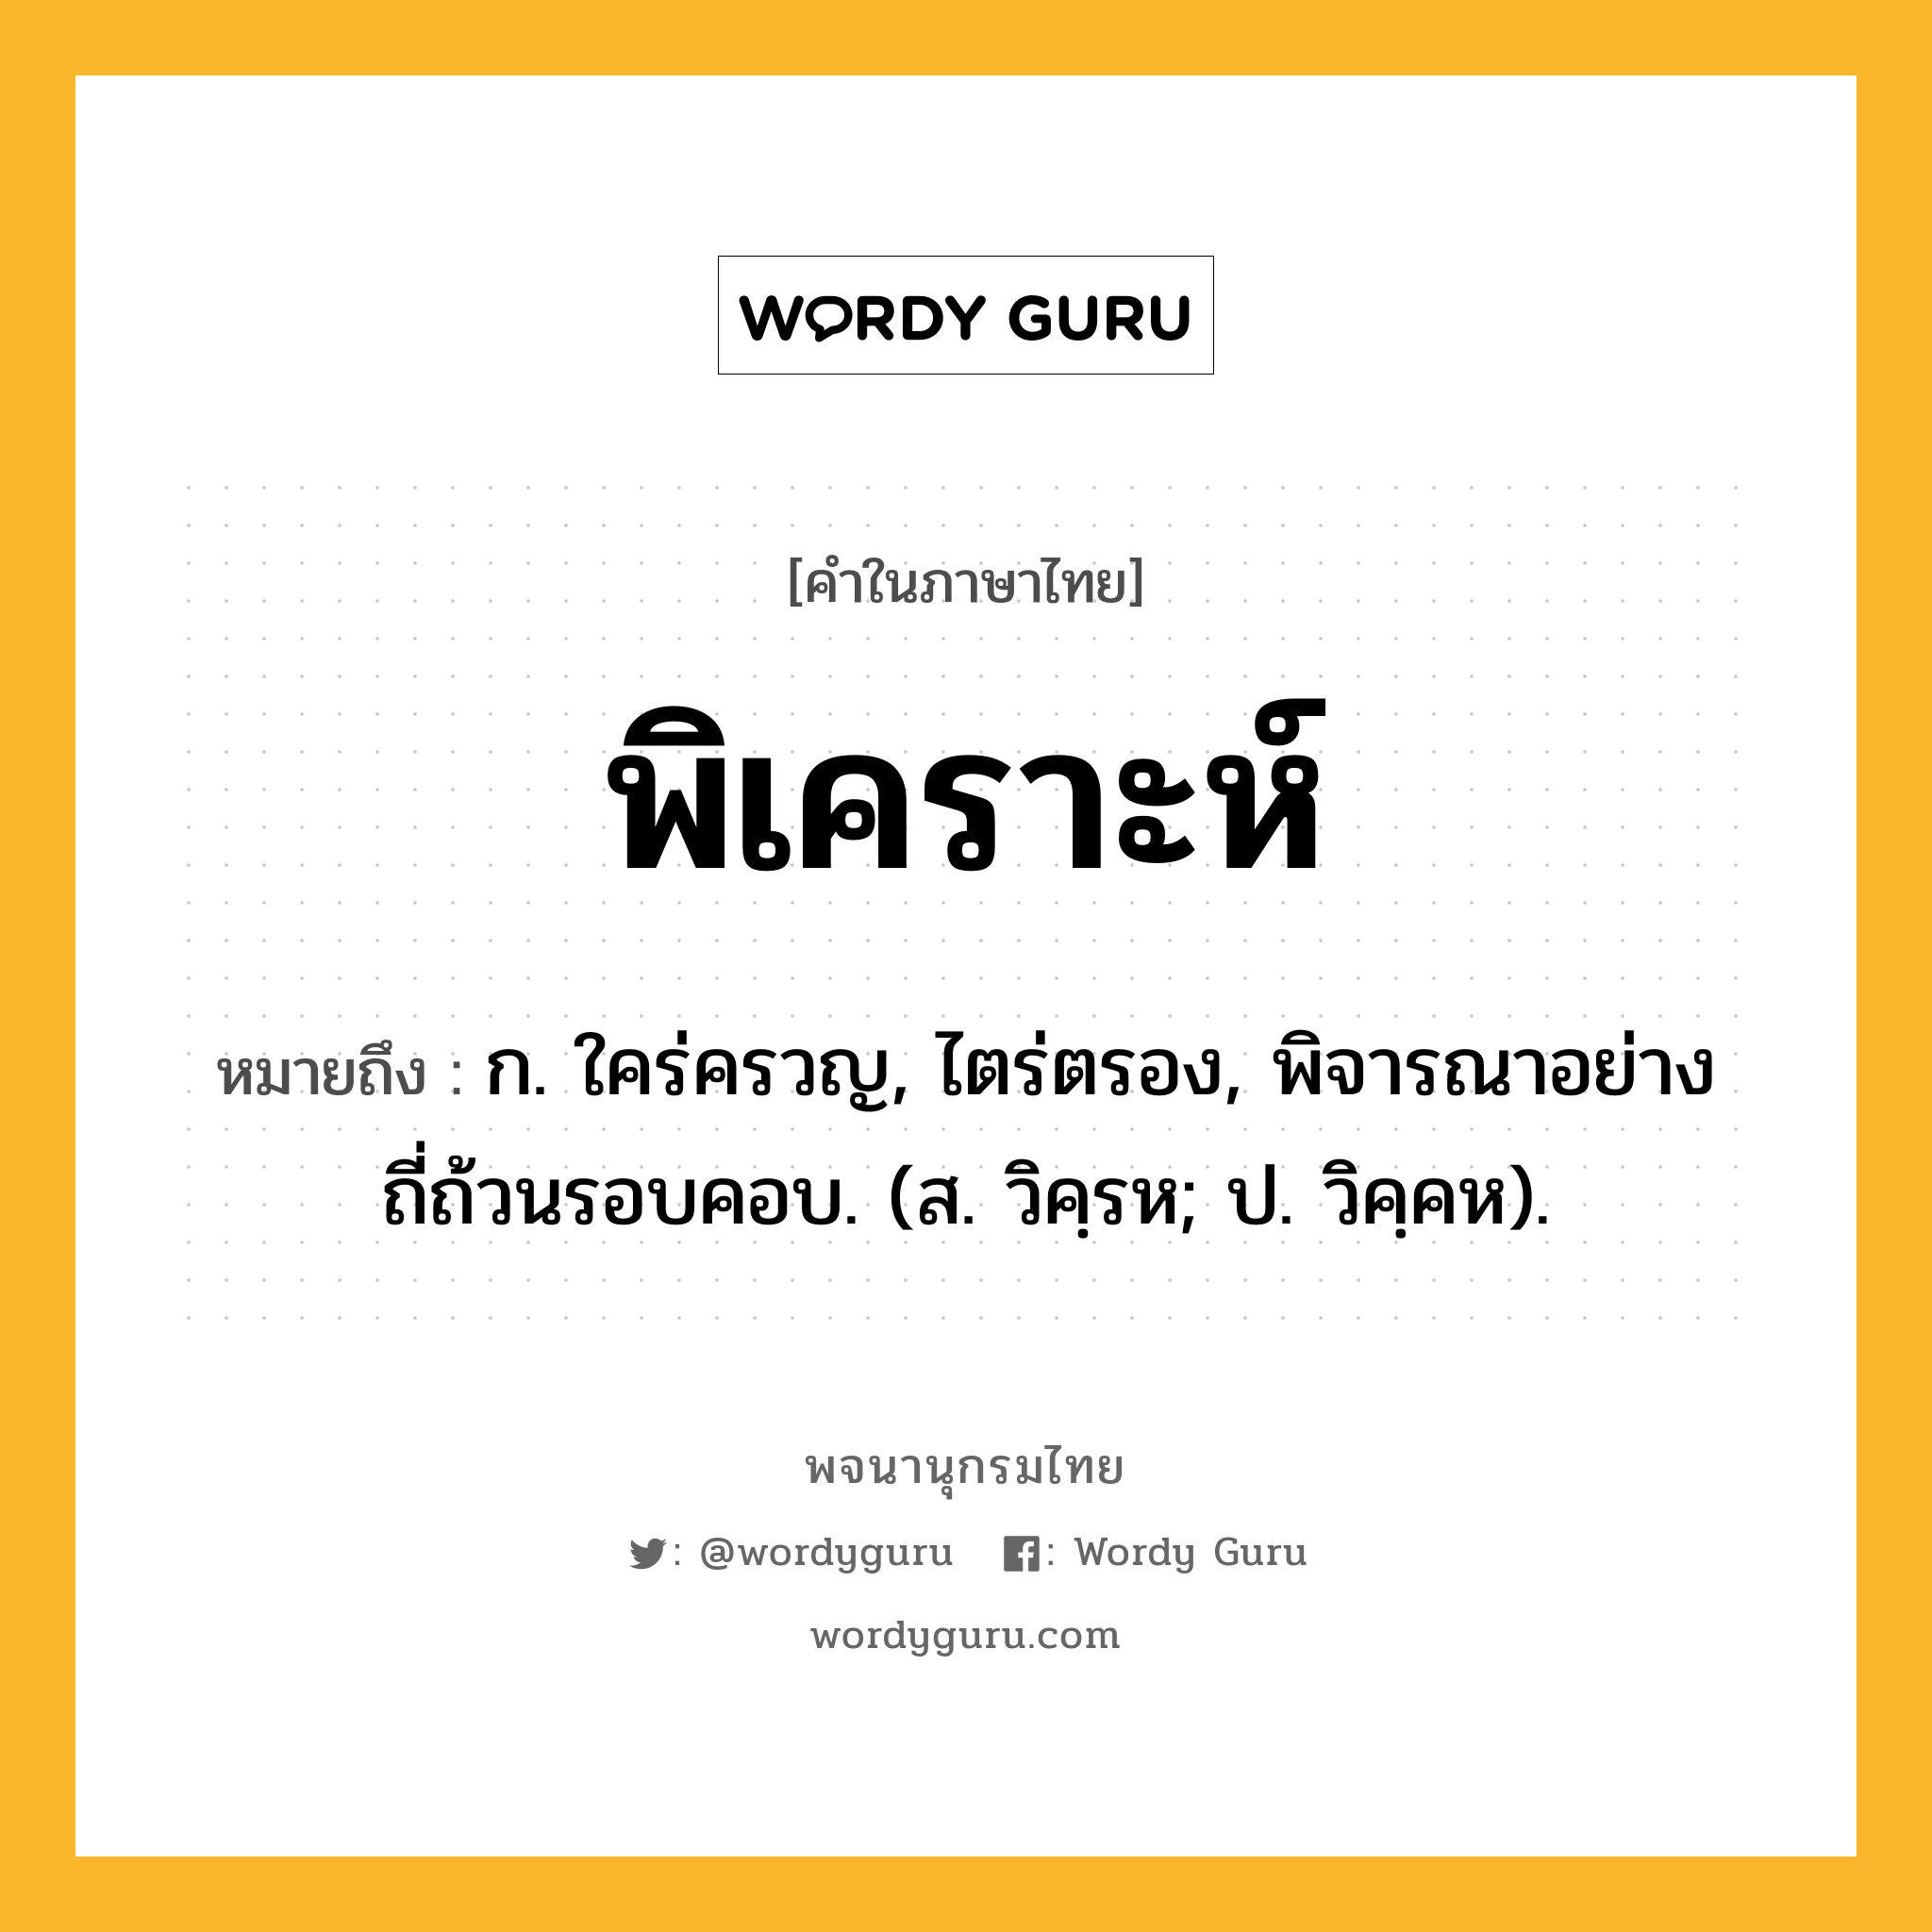 พิเคราะห์ ความหมาย หมายถึงอะไร?, คำในภาษาไทย พิเคราะห์ หมายถึง ก. ใคร่ครวญ, ไตร่ตรอง, พิจารณาอย่างถี่ถ้วนรอบคอบ. (ส. วิคฺรห; ป. วิคฺคห).